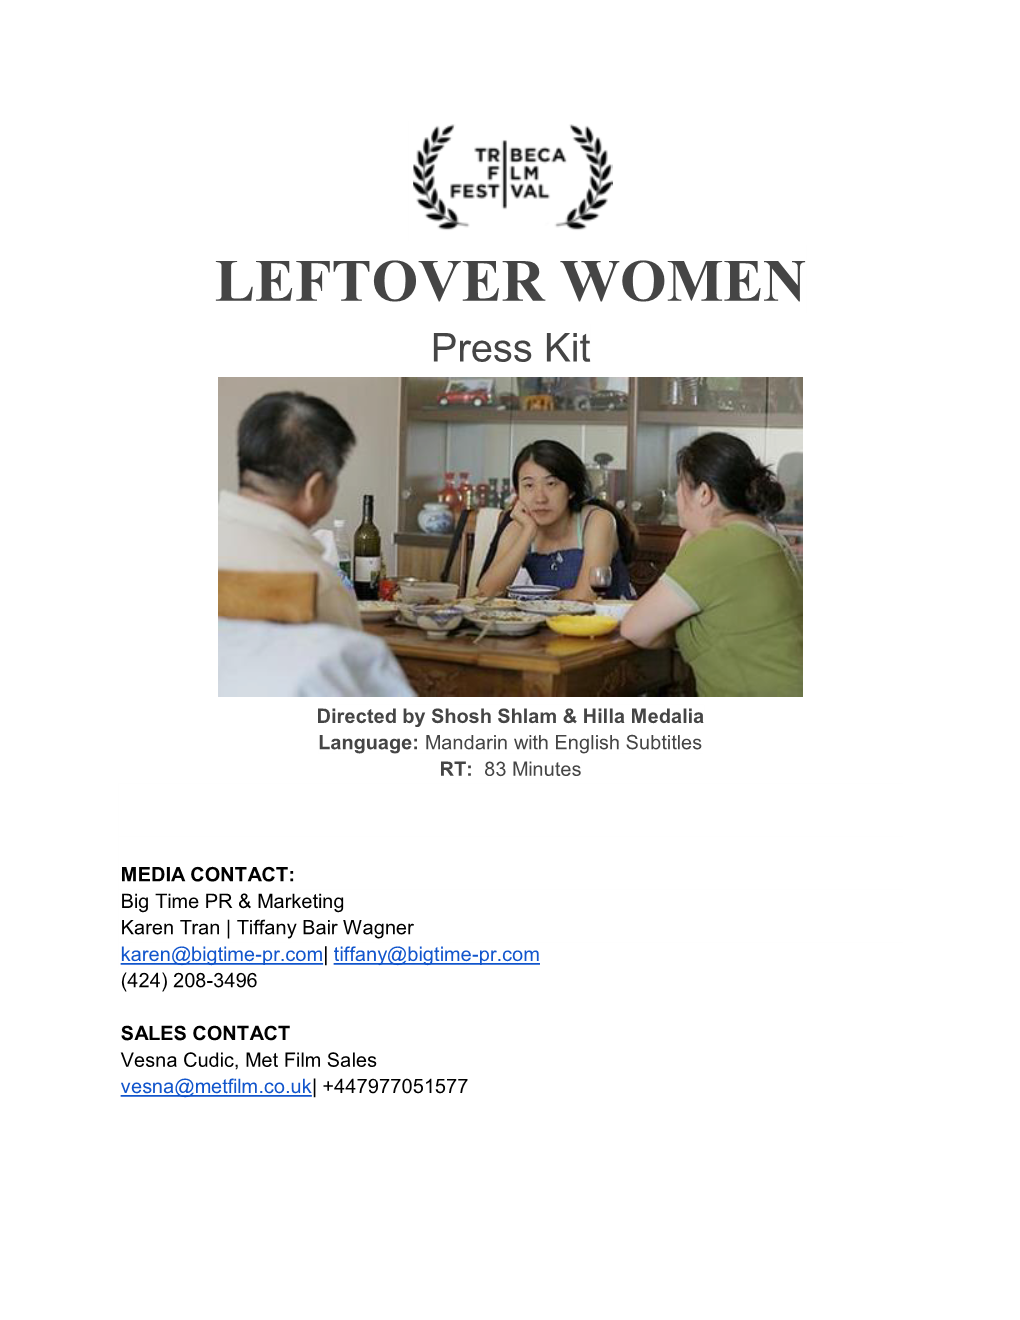 LEFTOVER WOMEN Press Kit